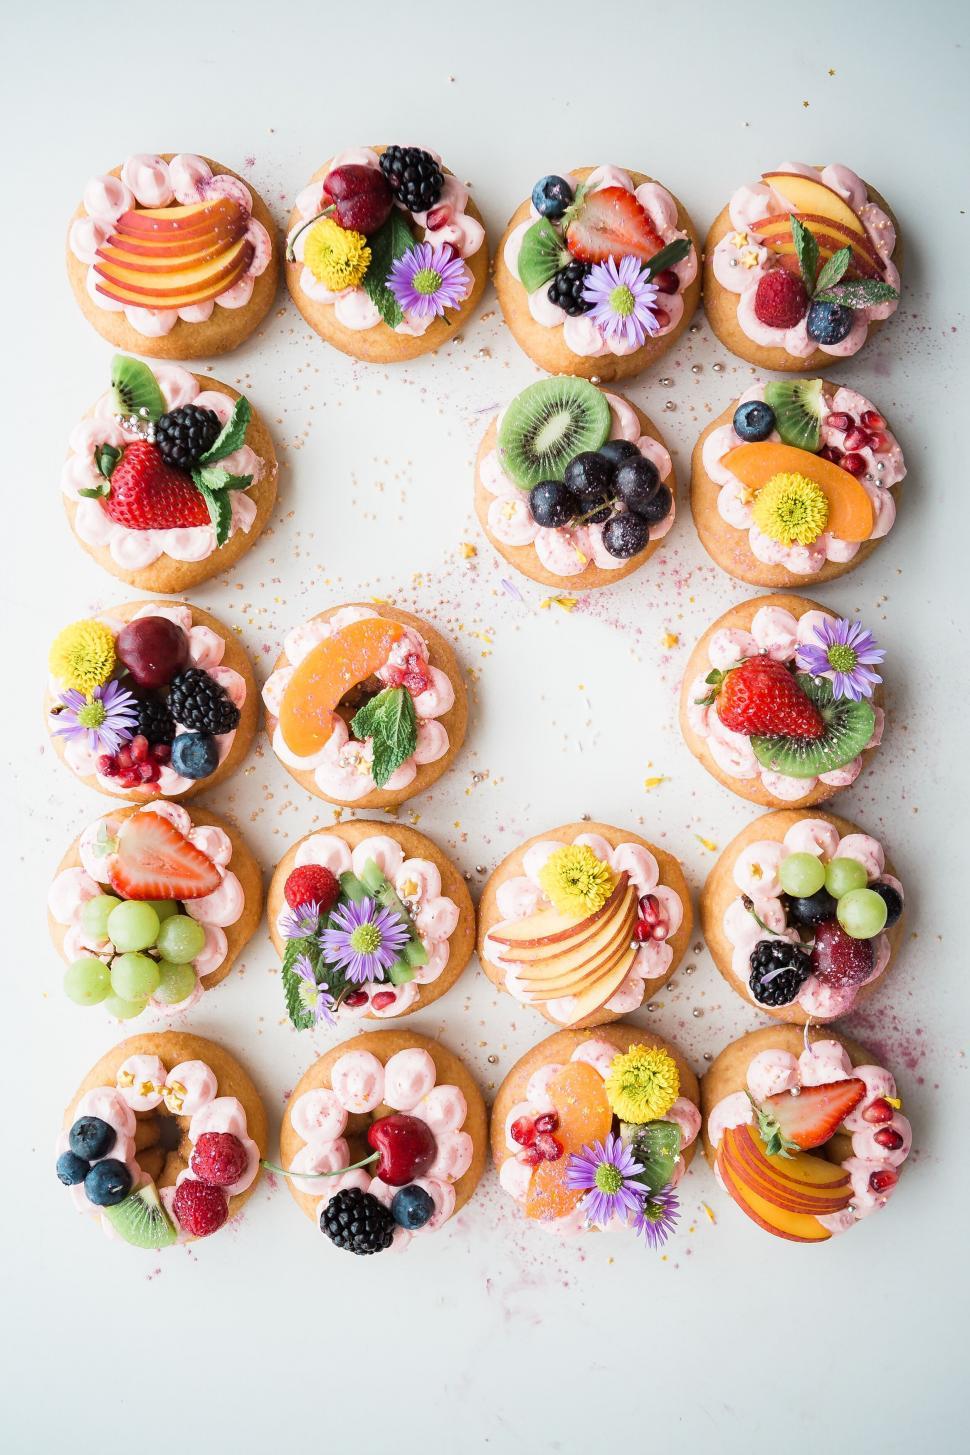 Free Image of Assorted mini fruit tarts arranged on white 